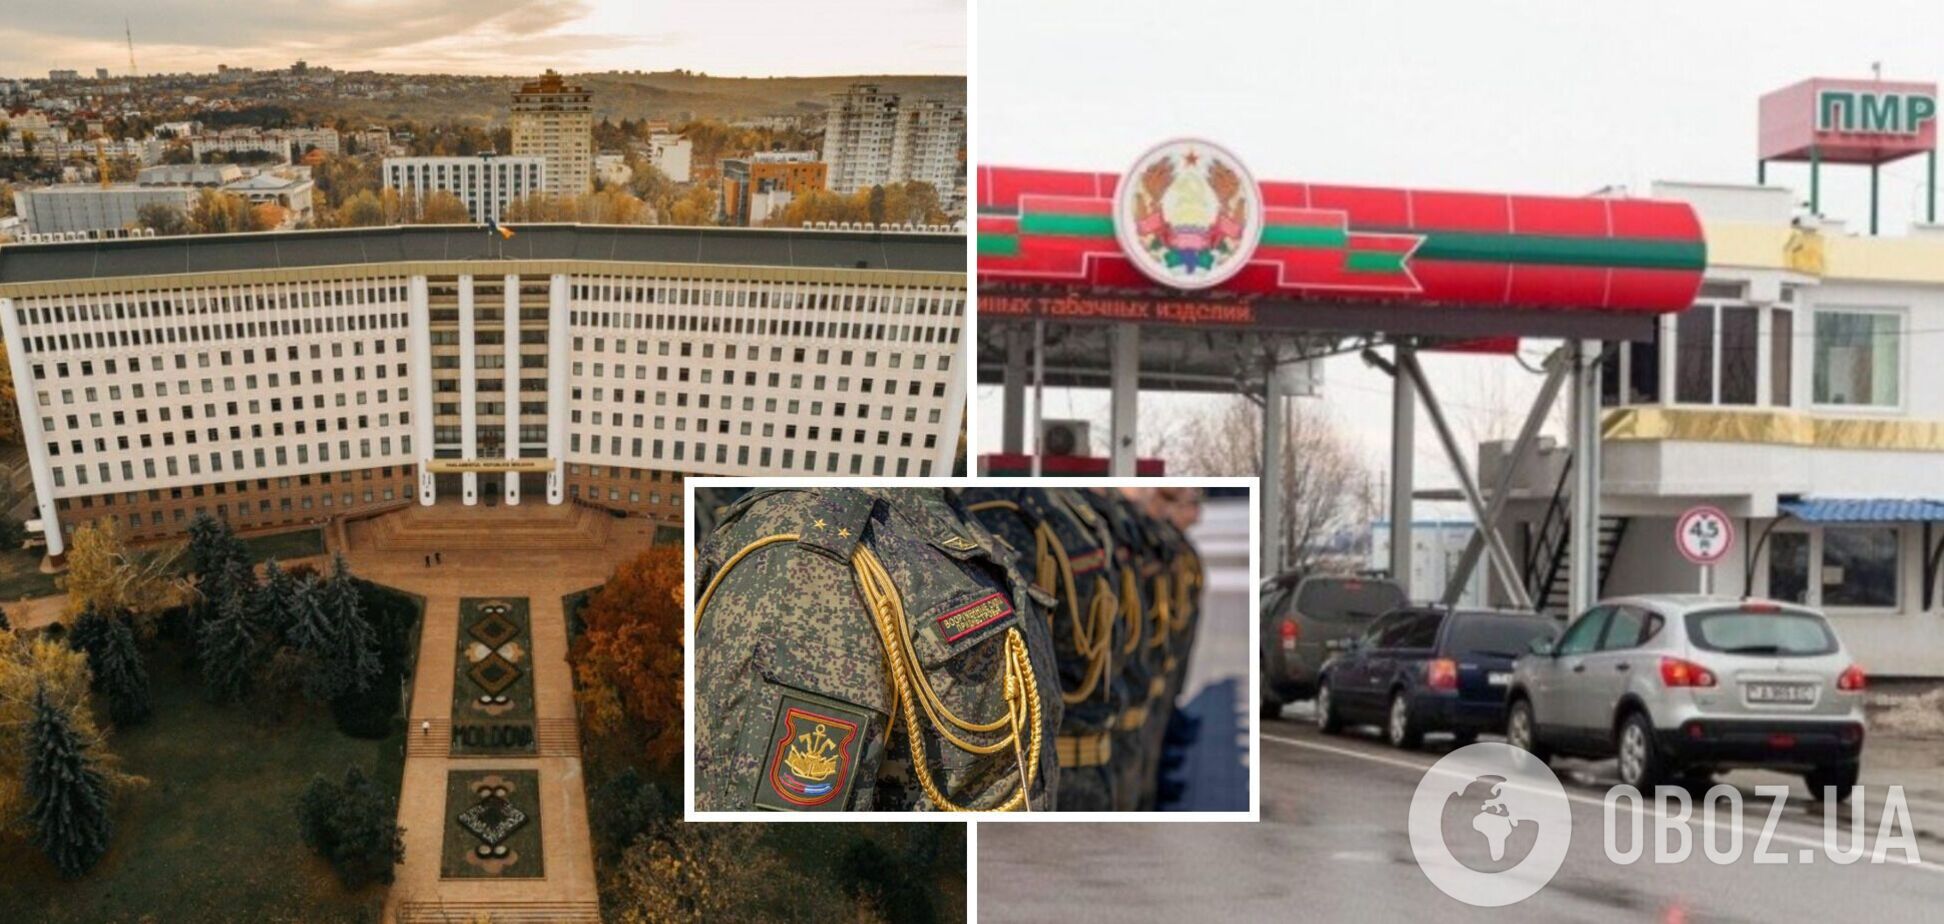 После слухов о мобилизации в РФ военные из Приднестровья скрылись в Молдове: депутат парламента о шансах реинтегрировать регион. Видео